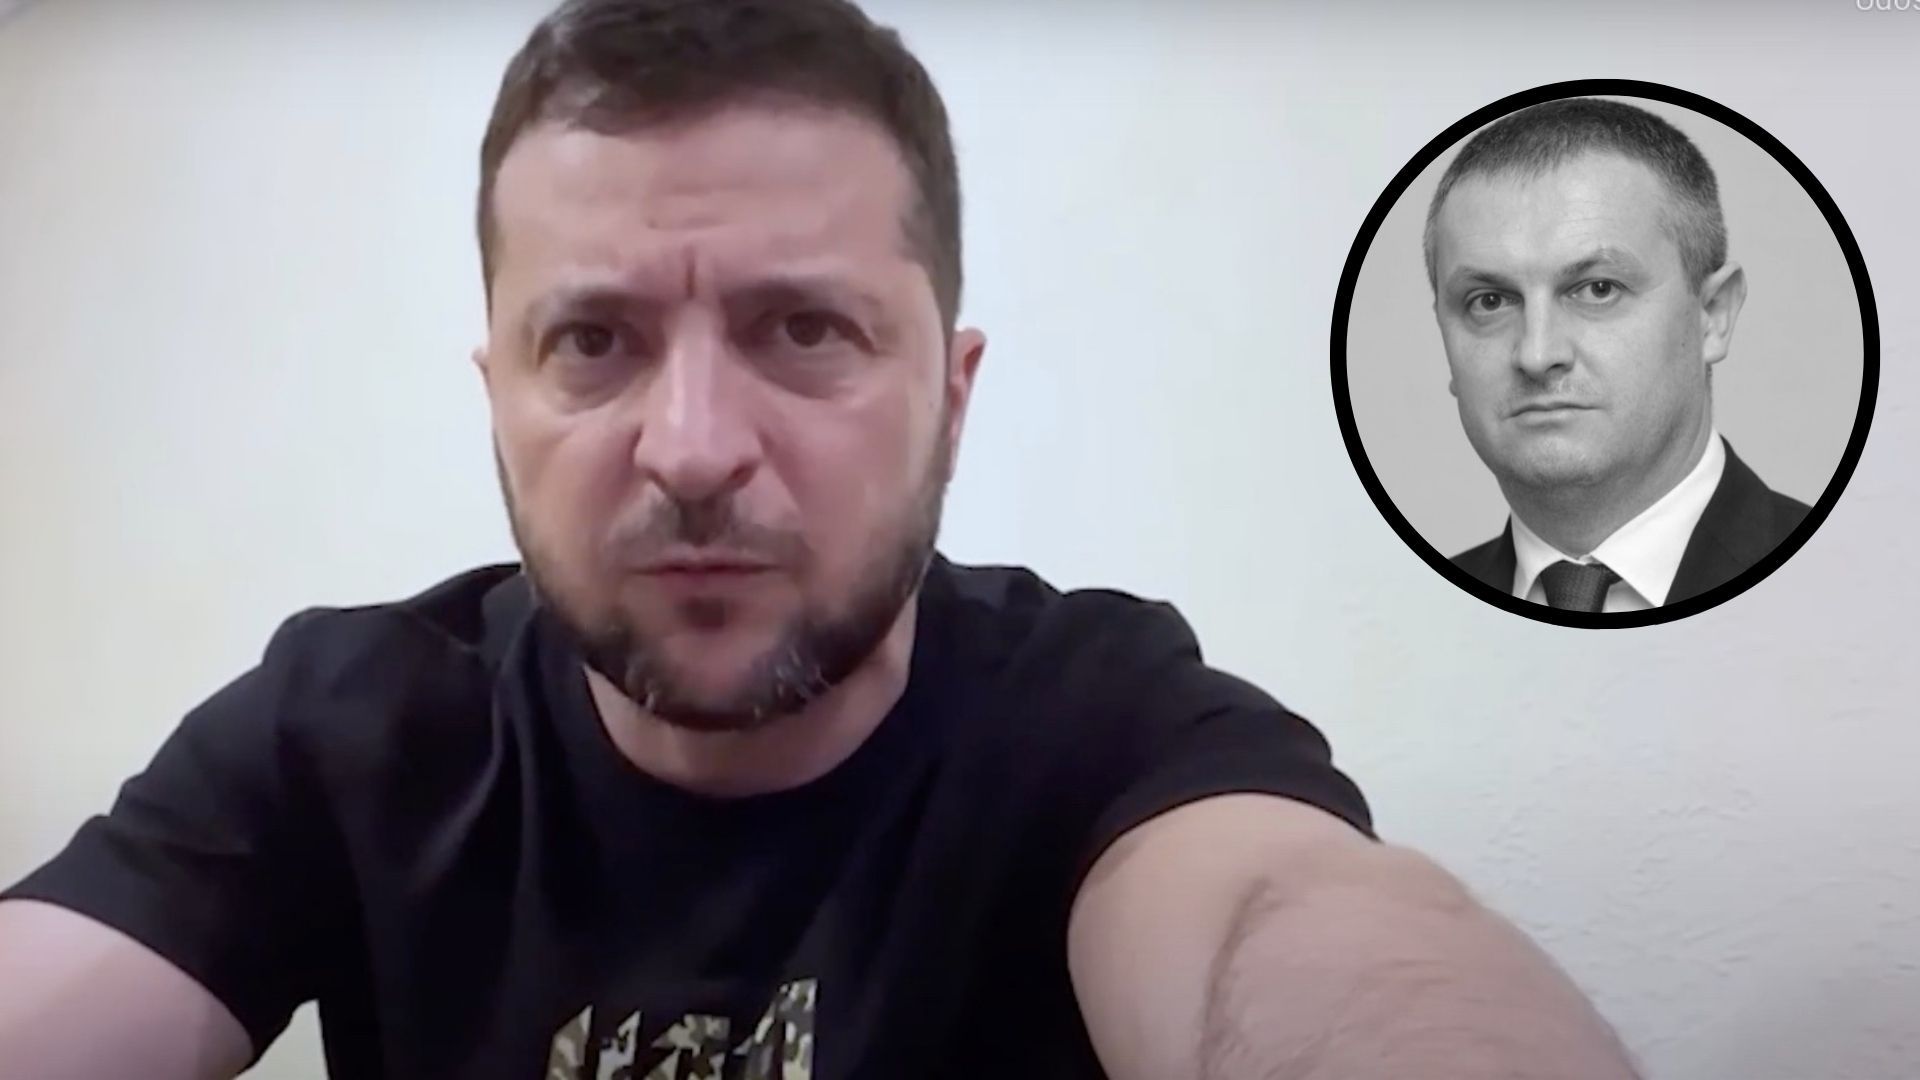 Nie żyje Ołeksandr Nakoneczny, szef SBU w obwodzie kirowohradzkim znaleziony martwy przez żonę